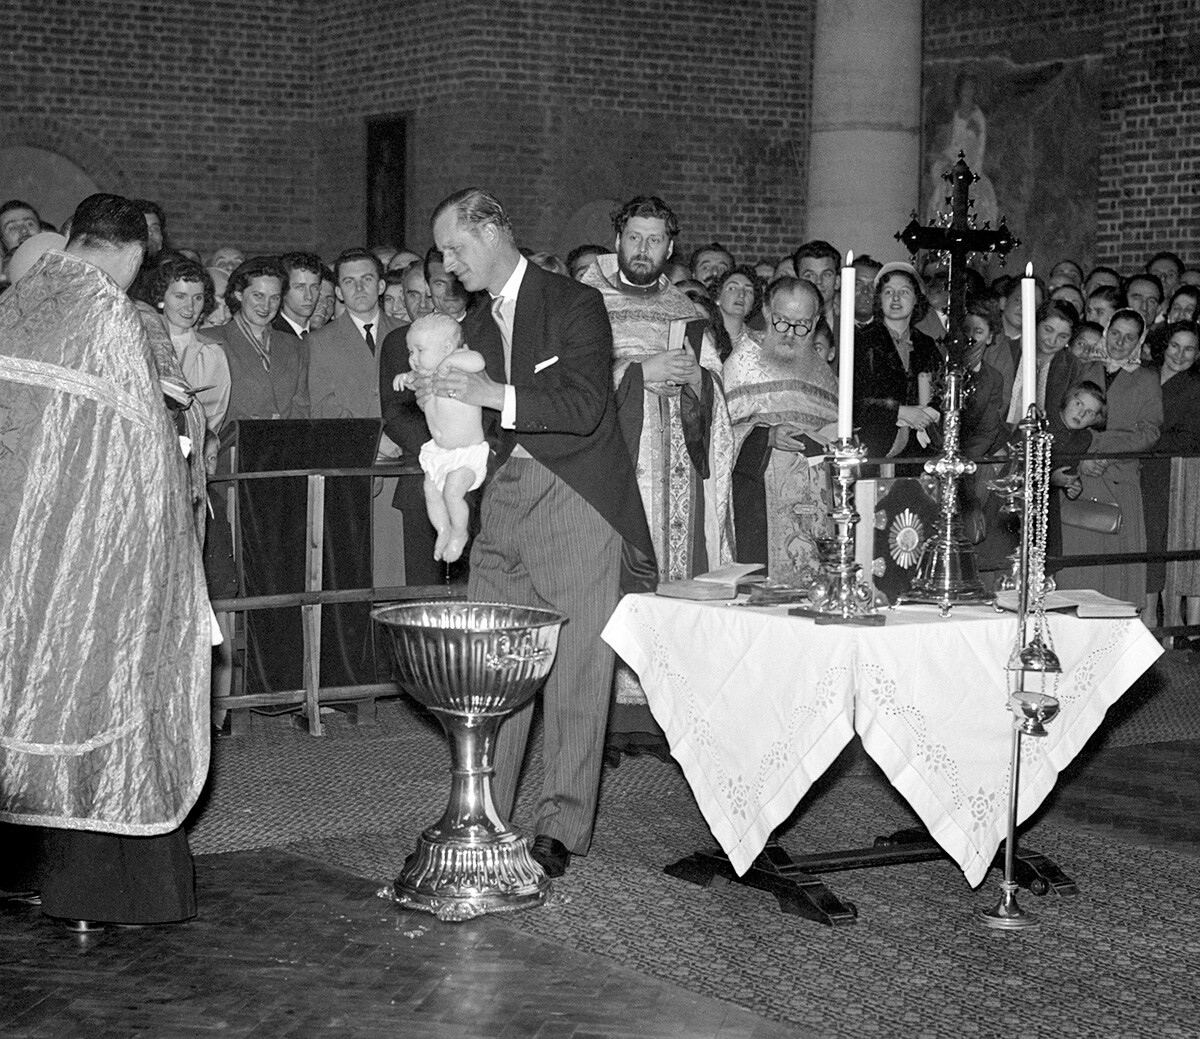 Der Herzog von Edinburgh, der der Patenonkel des Kindes ist, hebt die kleine Prinzessin Marija nach ihrer Taufe in der serbisch-orthodoxen Kirche aus dem Taufbecken. Das Baby ist die Tochter der Nichte des Herzogs, Prinzessin Christina von Hessen und Prinz Andrej von Jugoslawien.